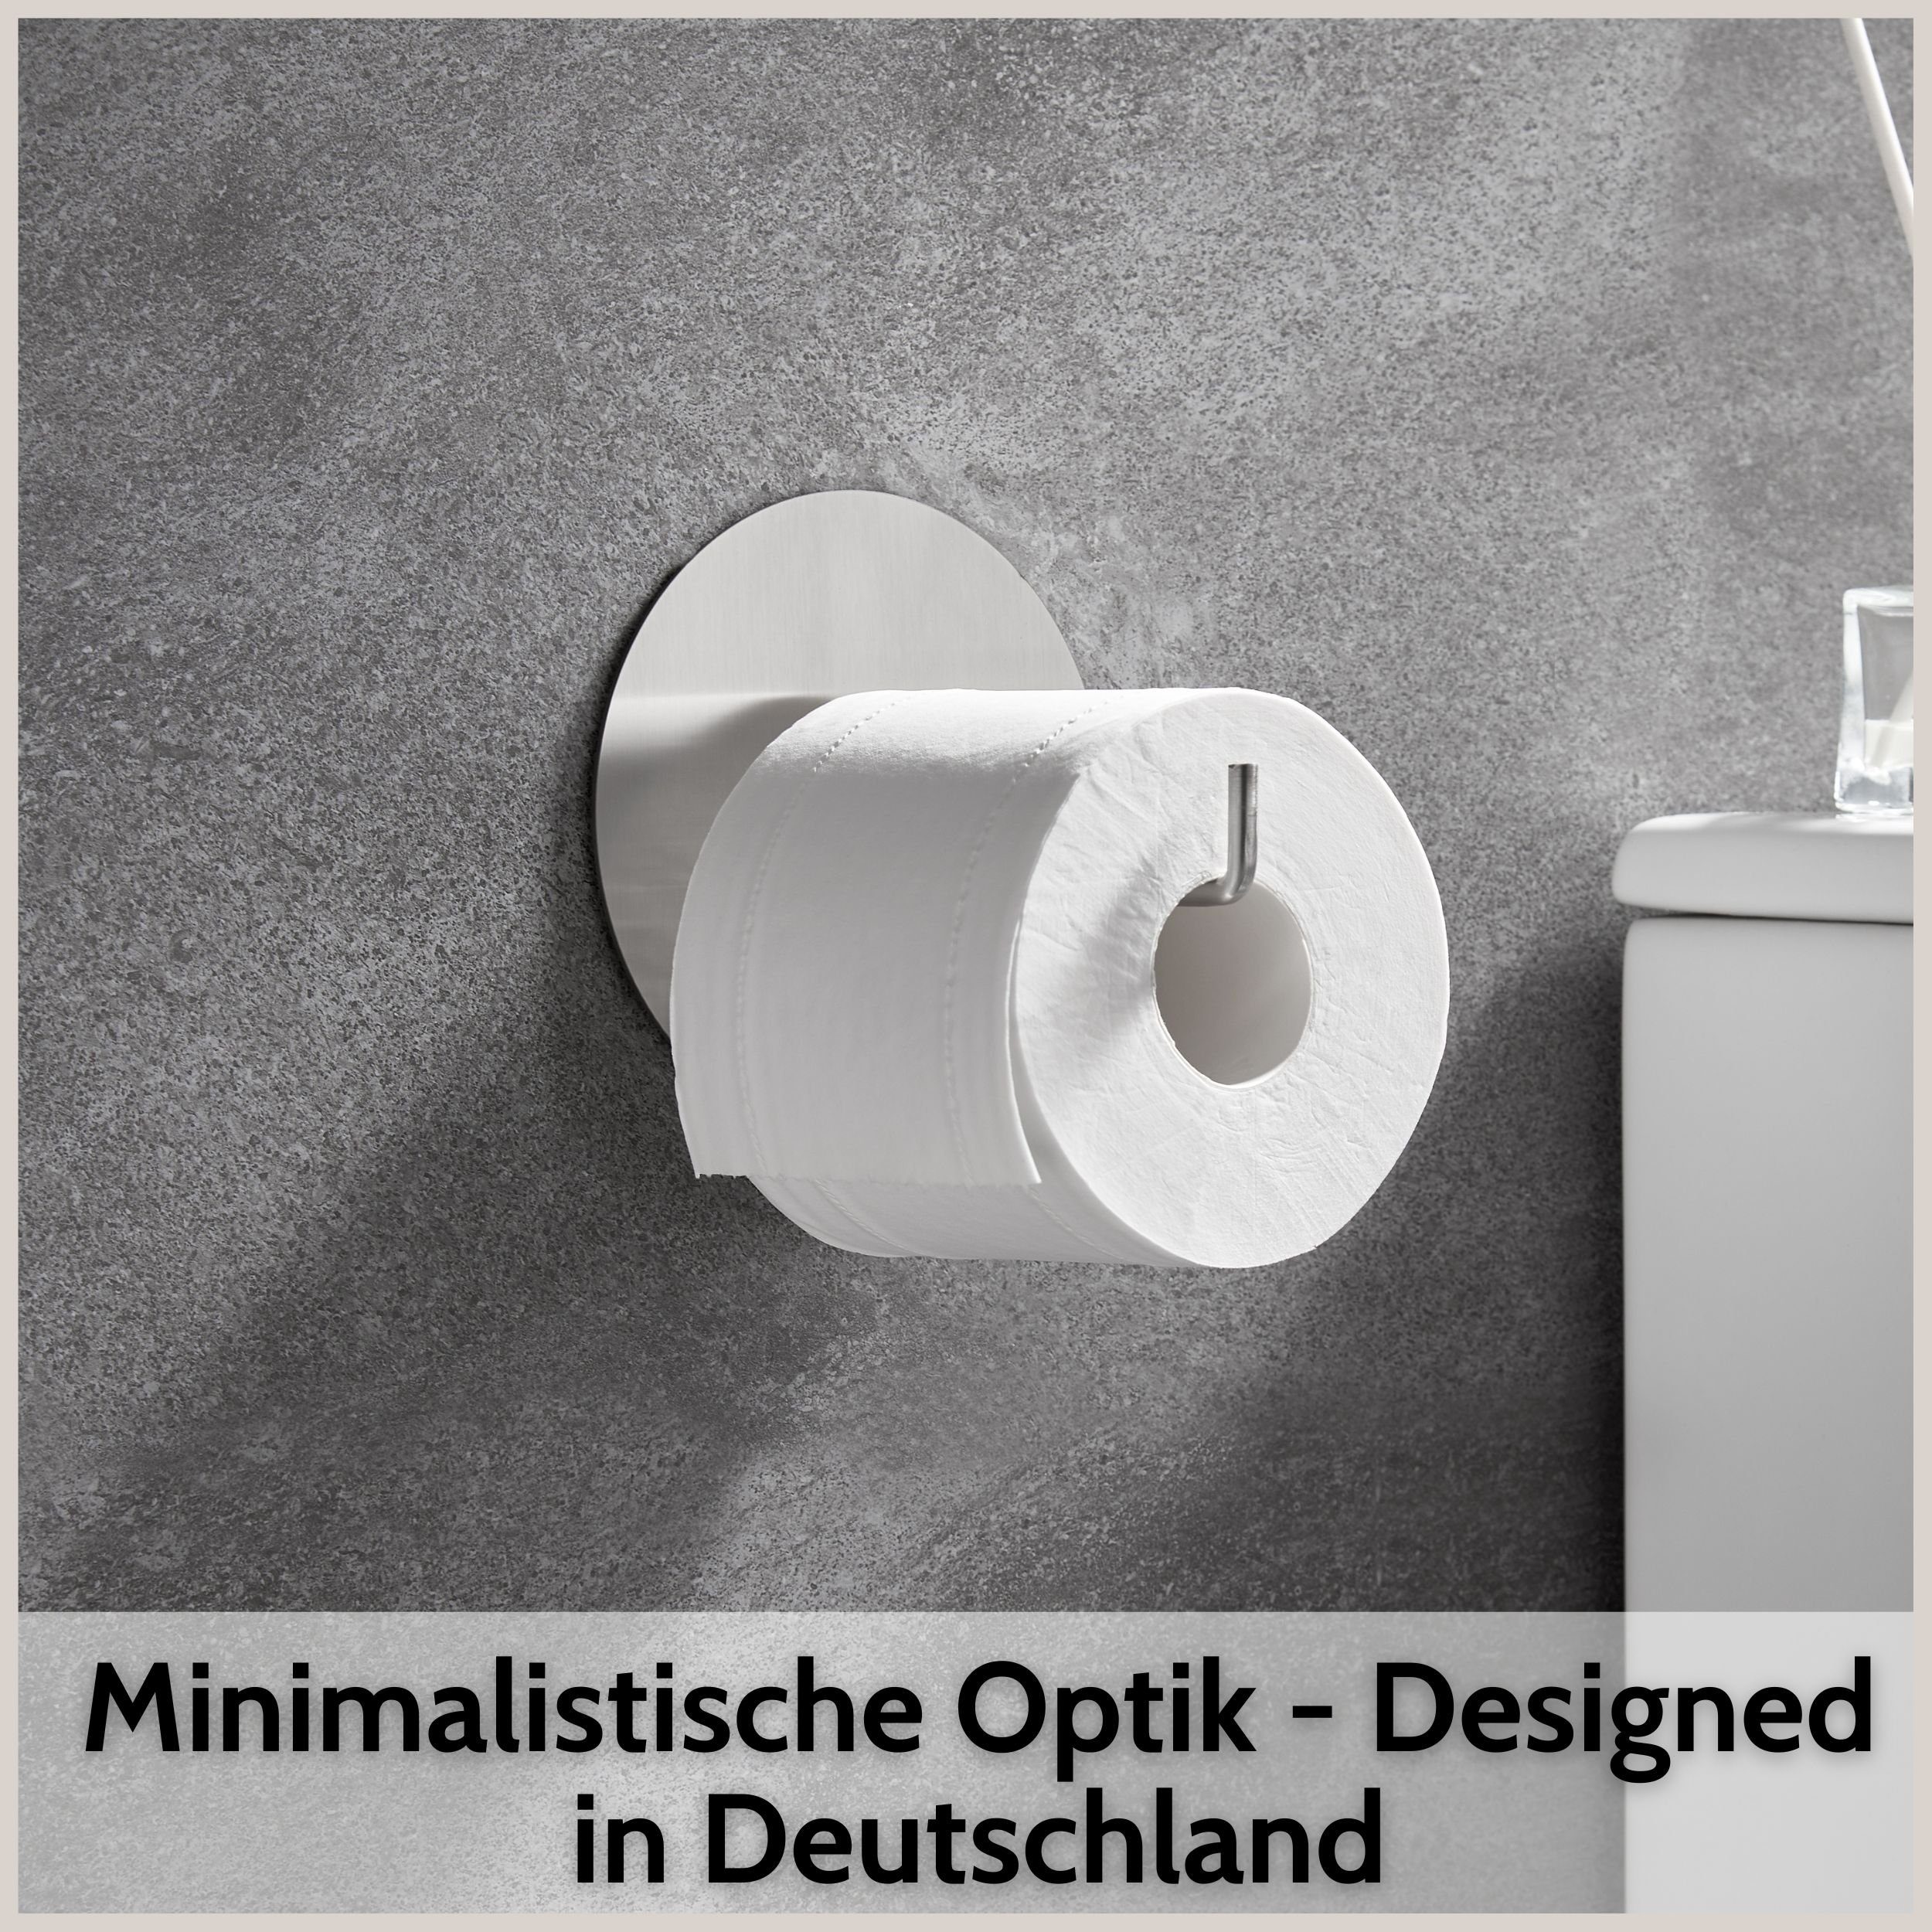 DEKAZIA Toilettenpapierhalter, Rostfreier Edelstahl, gebürstet Design ohne Besonderes Bohren, selbstklebend, Edelstahl